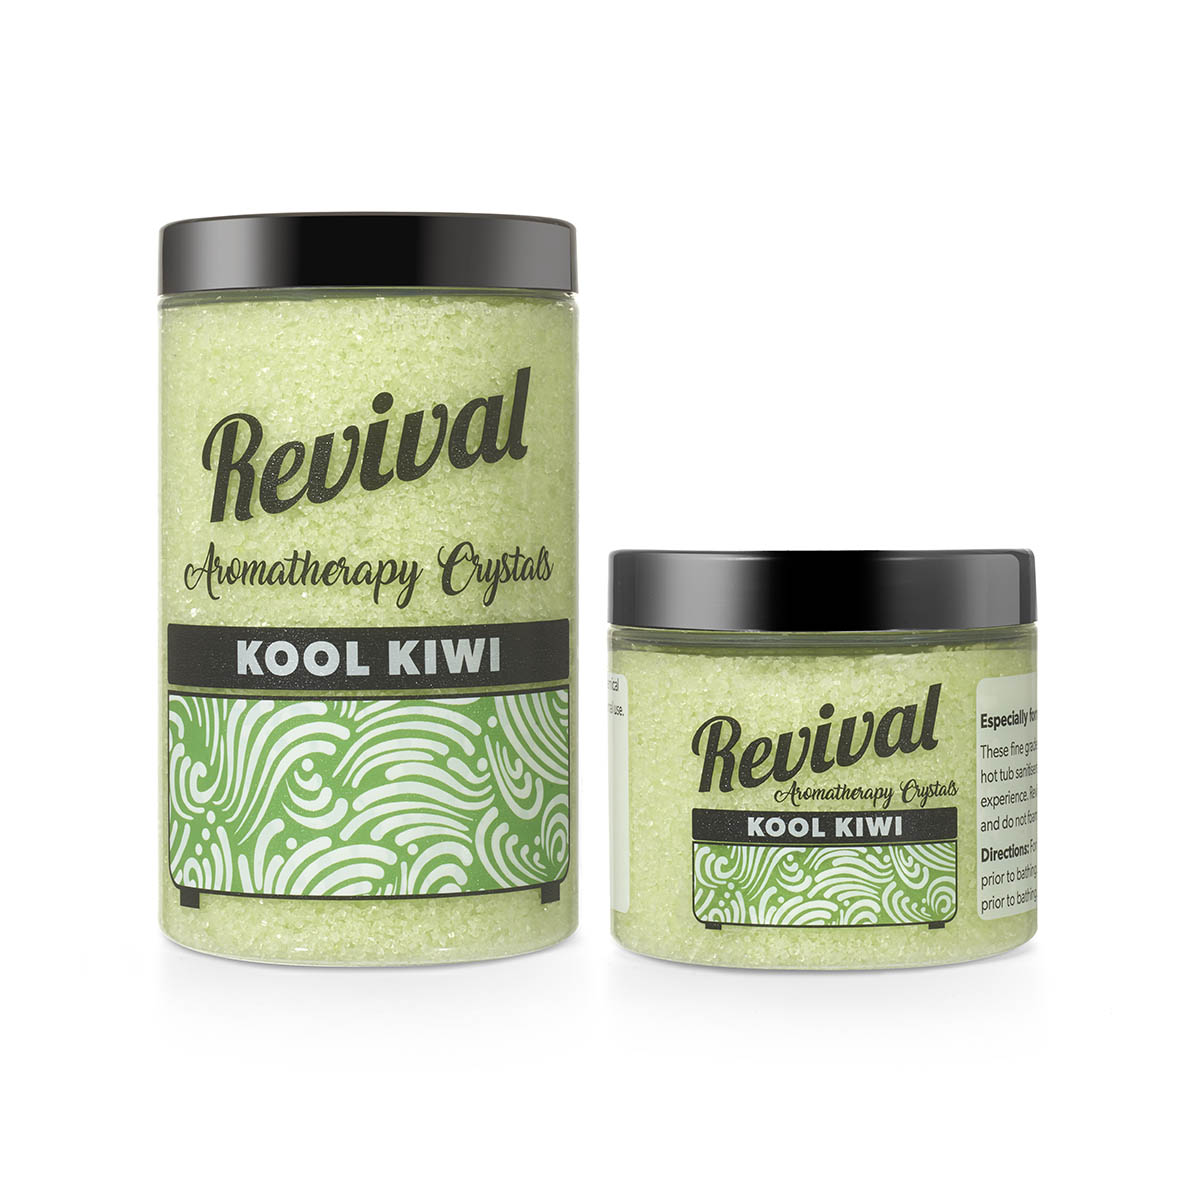 Revival Kool Kiwi 500g